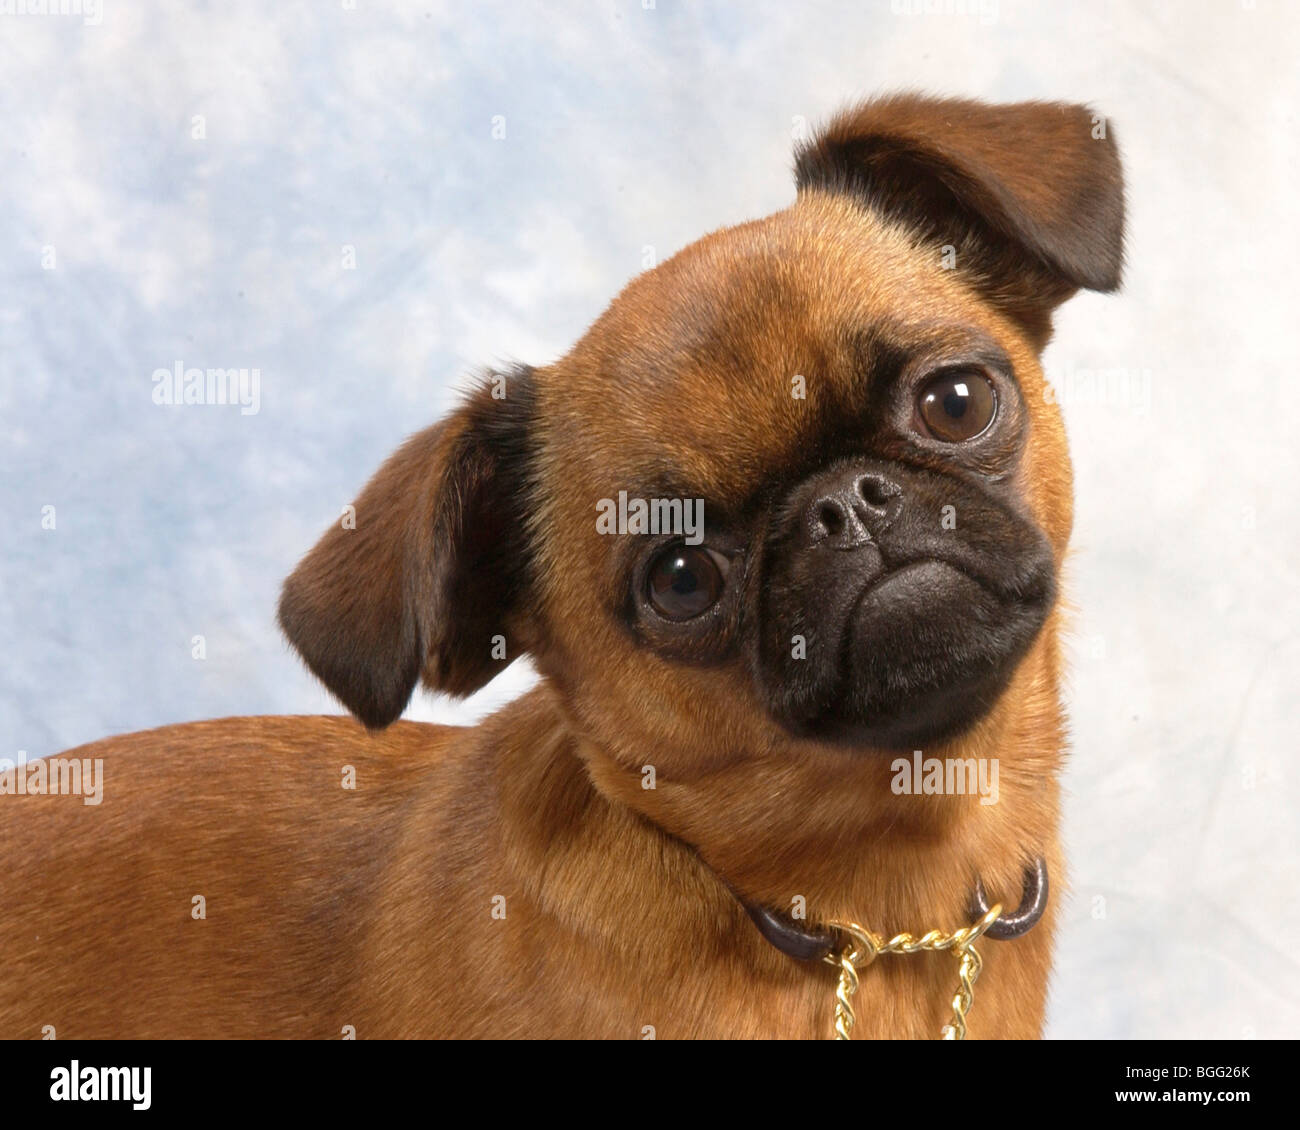 griffon bruxellois dog Stock Photo - Alamy